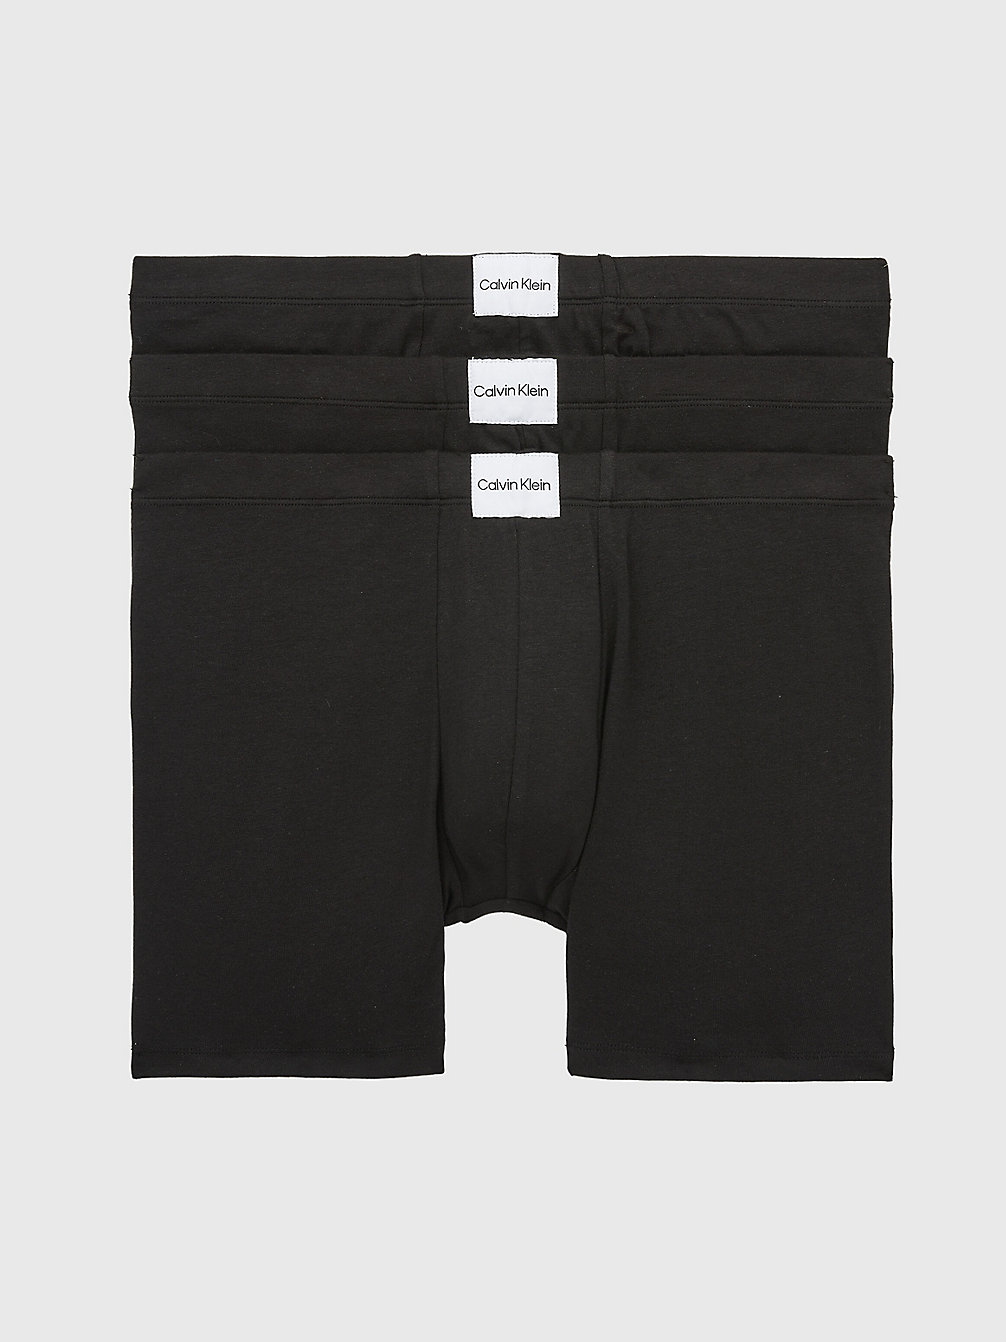 BLACK/BLACK/BLACK > 3 Pack Boxershorts - Pure Cotton > undefined Herren - Calvin Klein